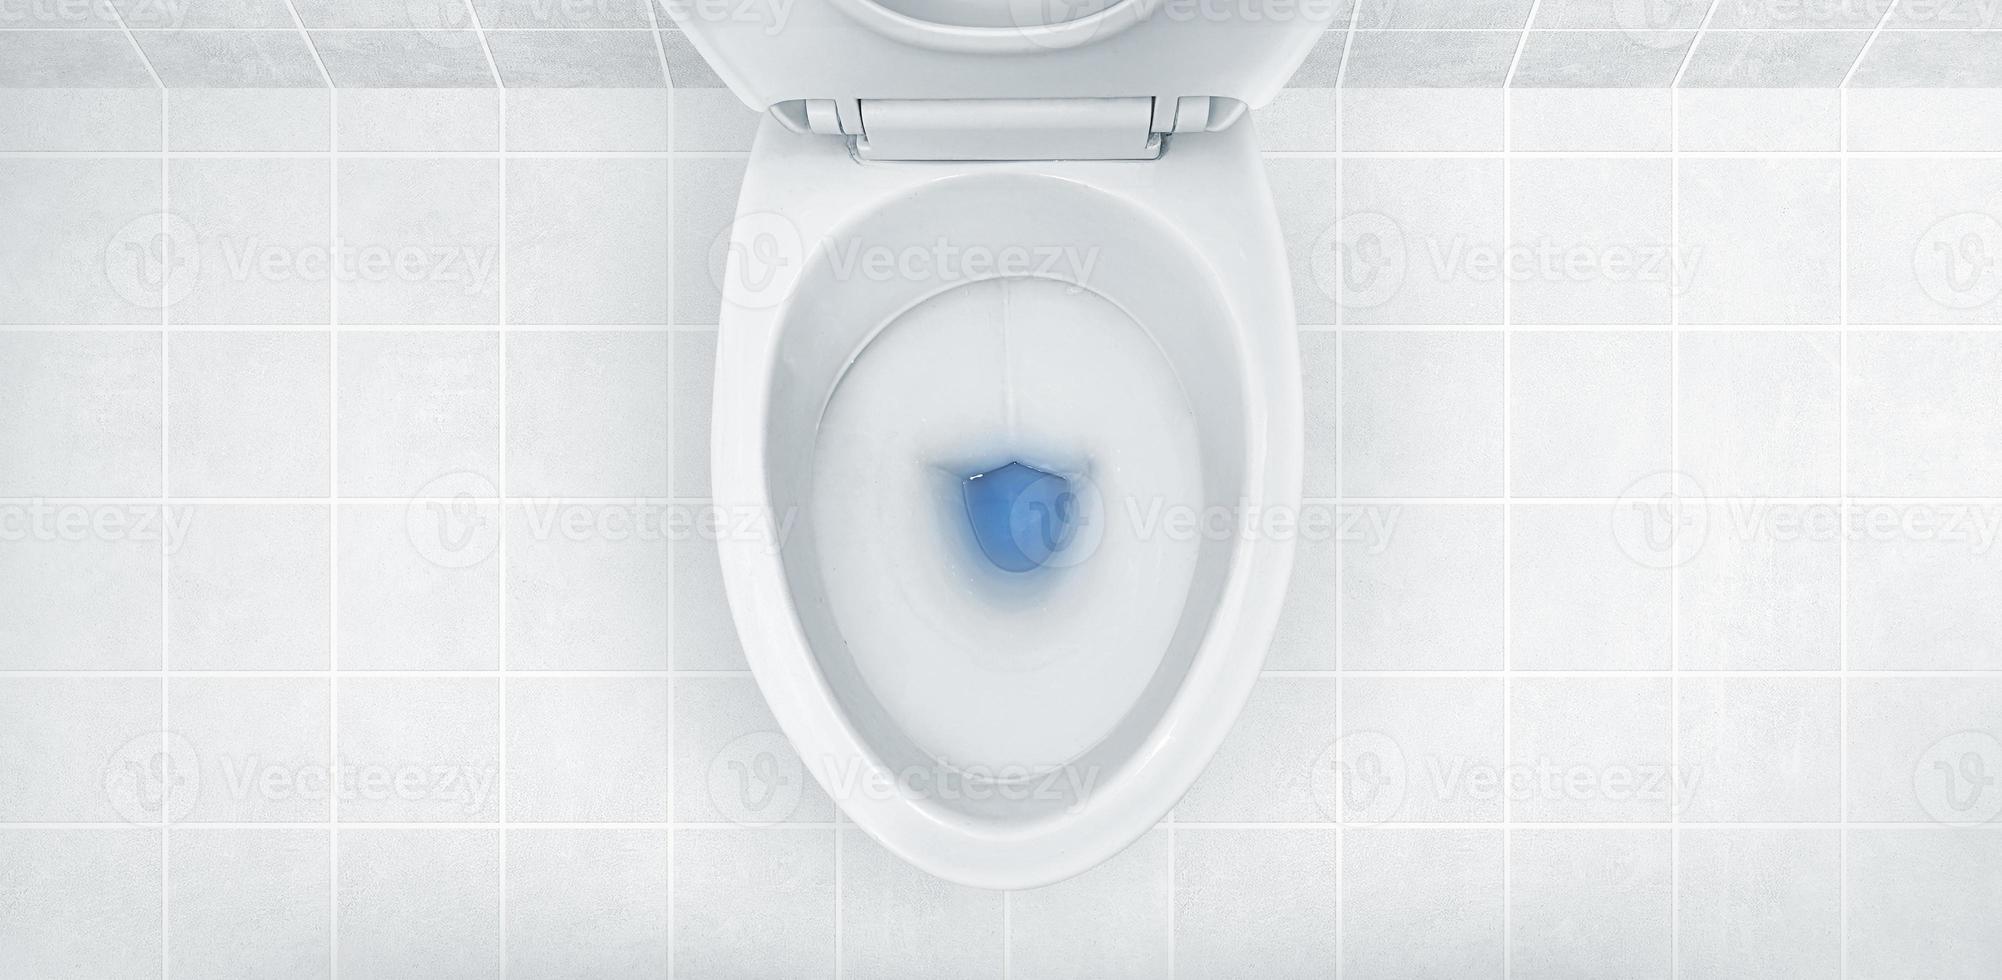 vue de dessus de la cuvette des toilettes, rinçage du détergent bleu dedans photo